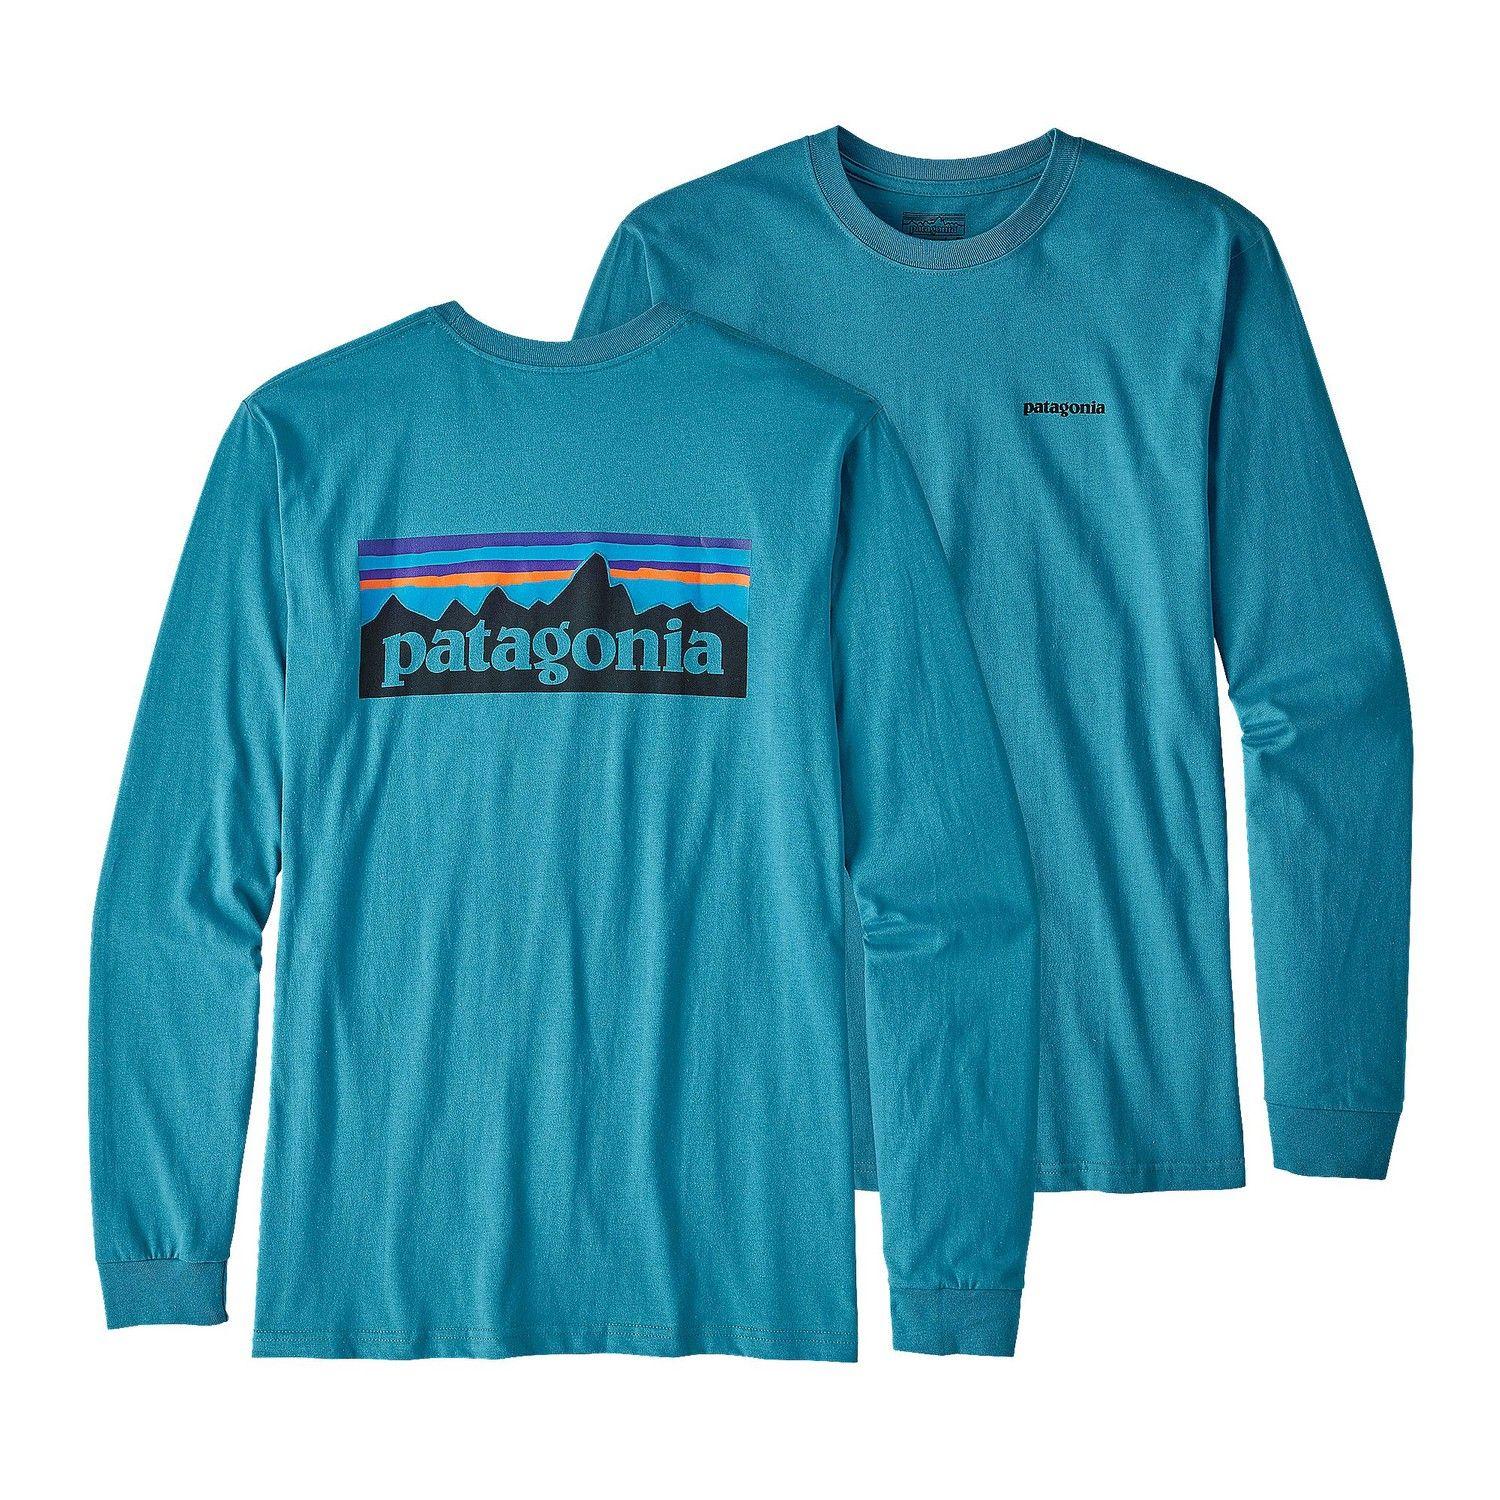 Patagonia Clothing Logo - Patagonia Men's Long-Sleeved P-6 Logo Cotton T-Shirt